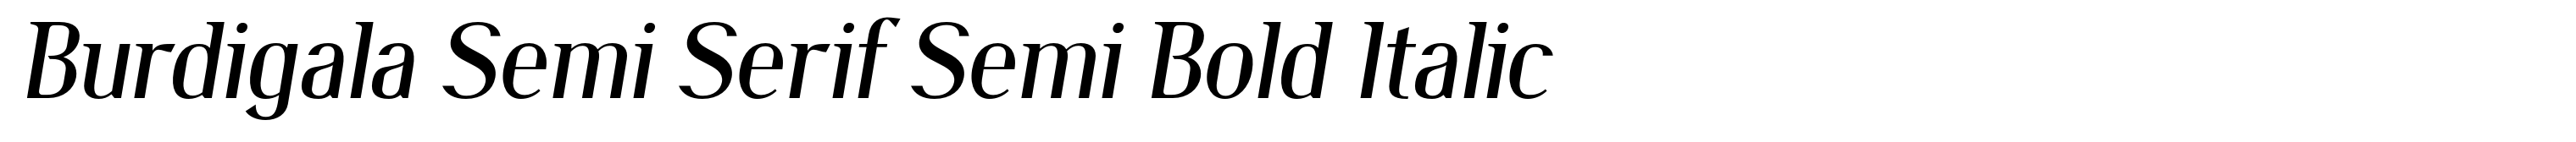 Burdigala Semi Serif Semi Bold Italic